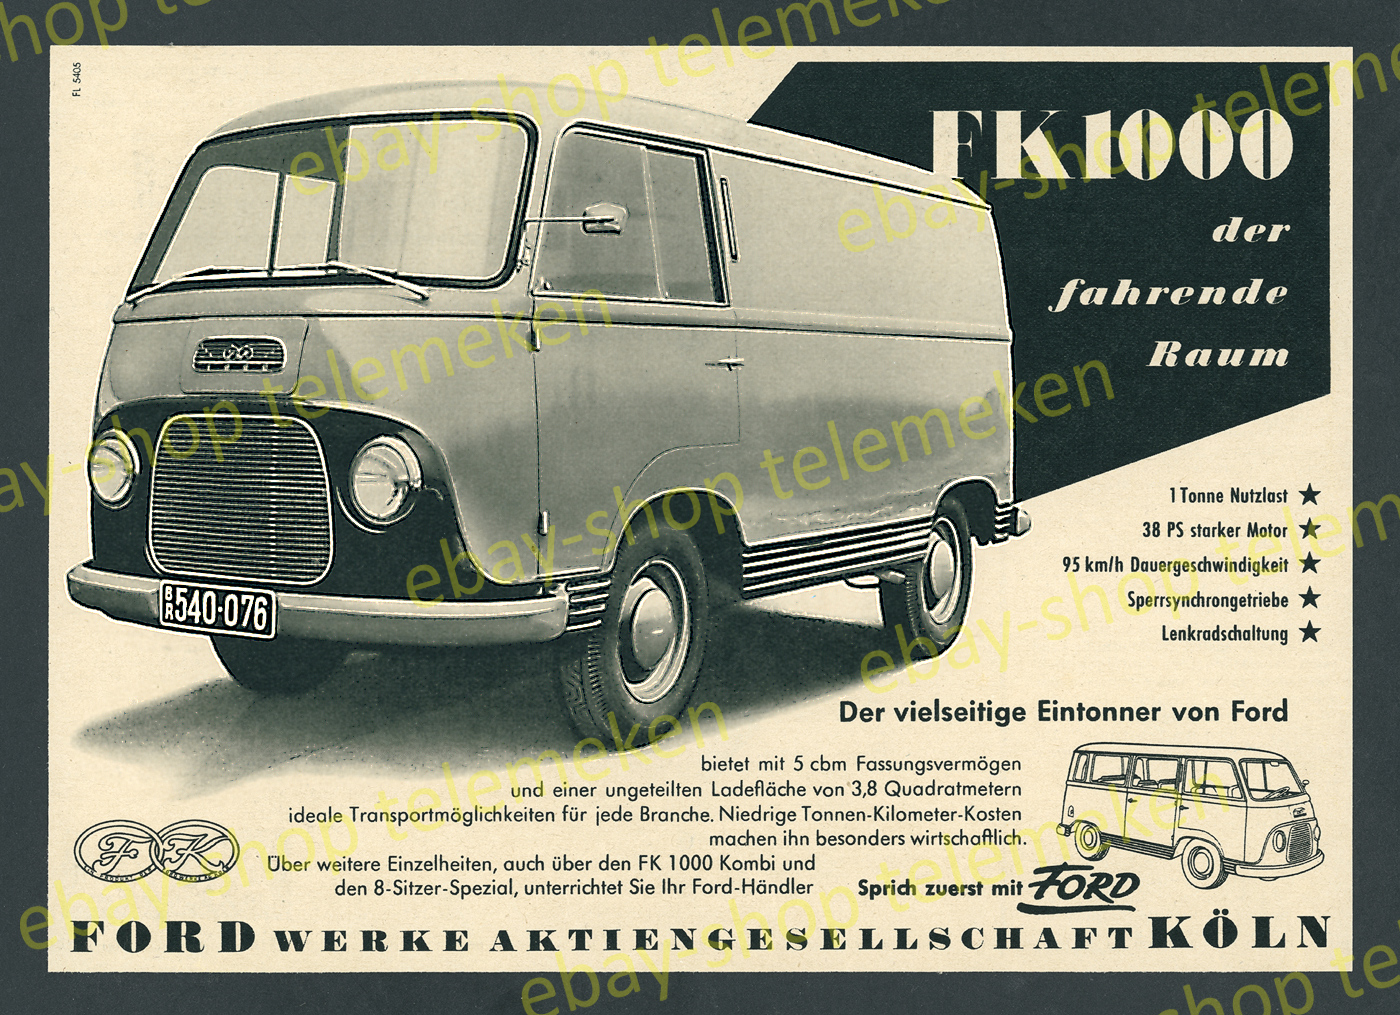 Or Reklame Auto Transporter Fk1000 Oldtimer Technik Bus Ford Werke Ag Koln 1954 Ebay